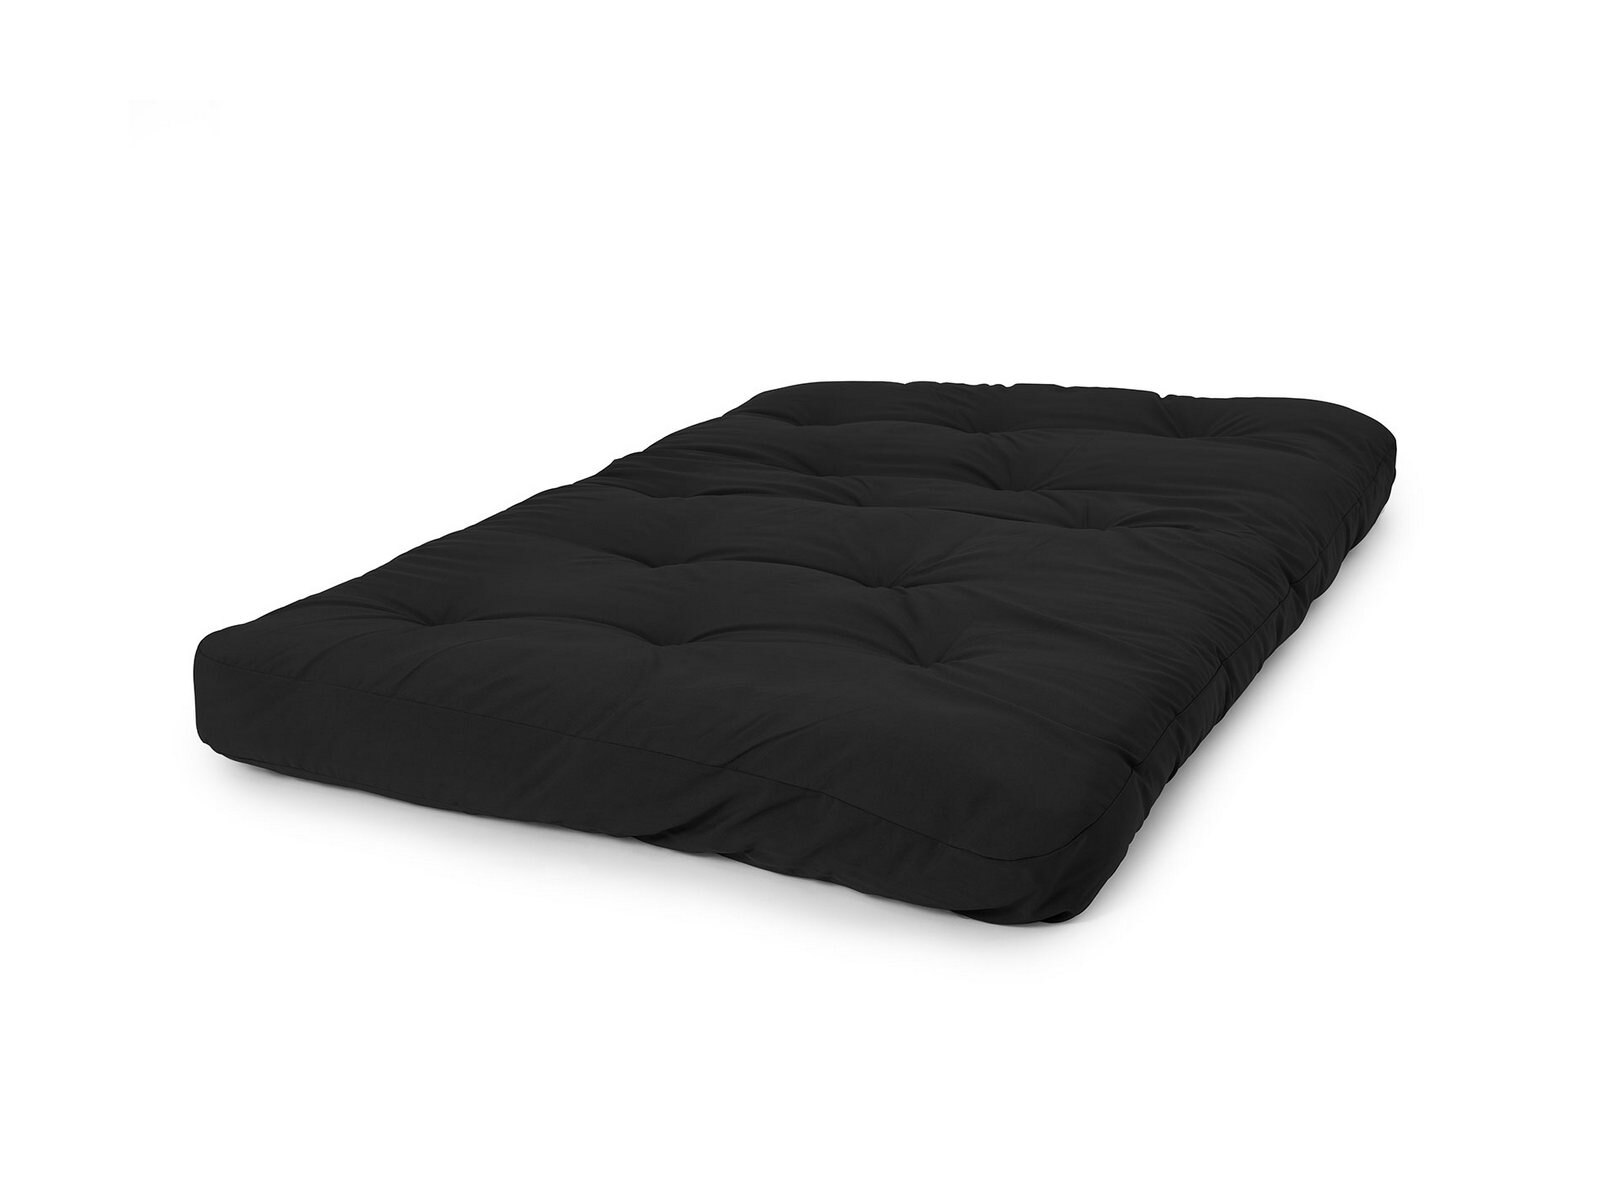 8 inch liberty futon mattress